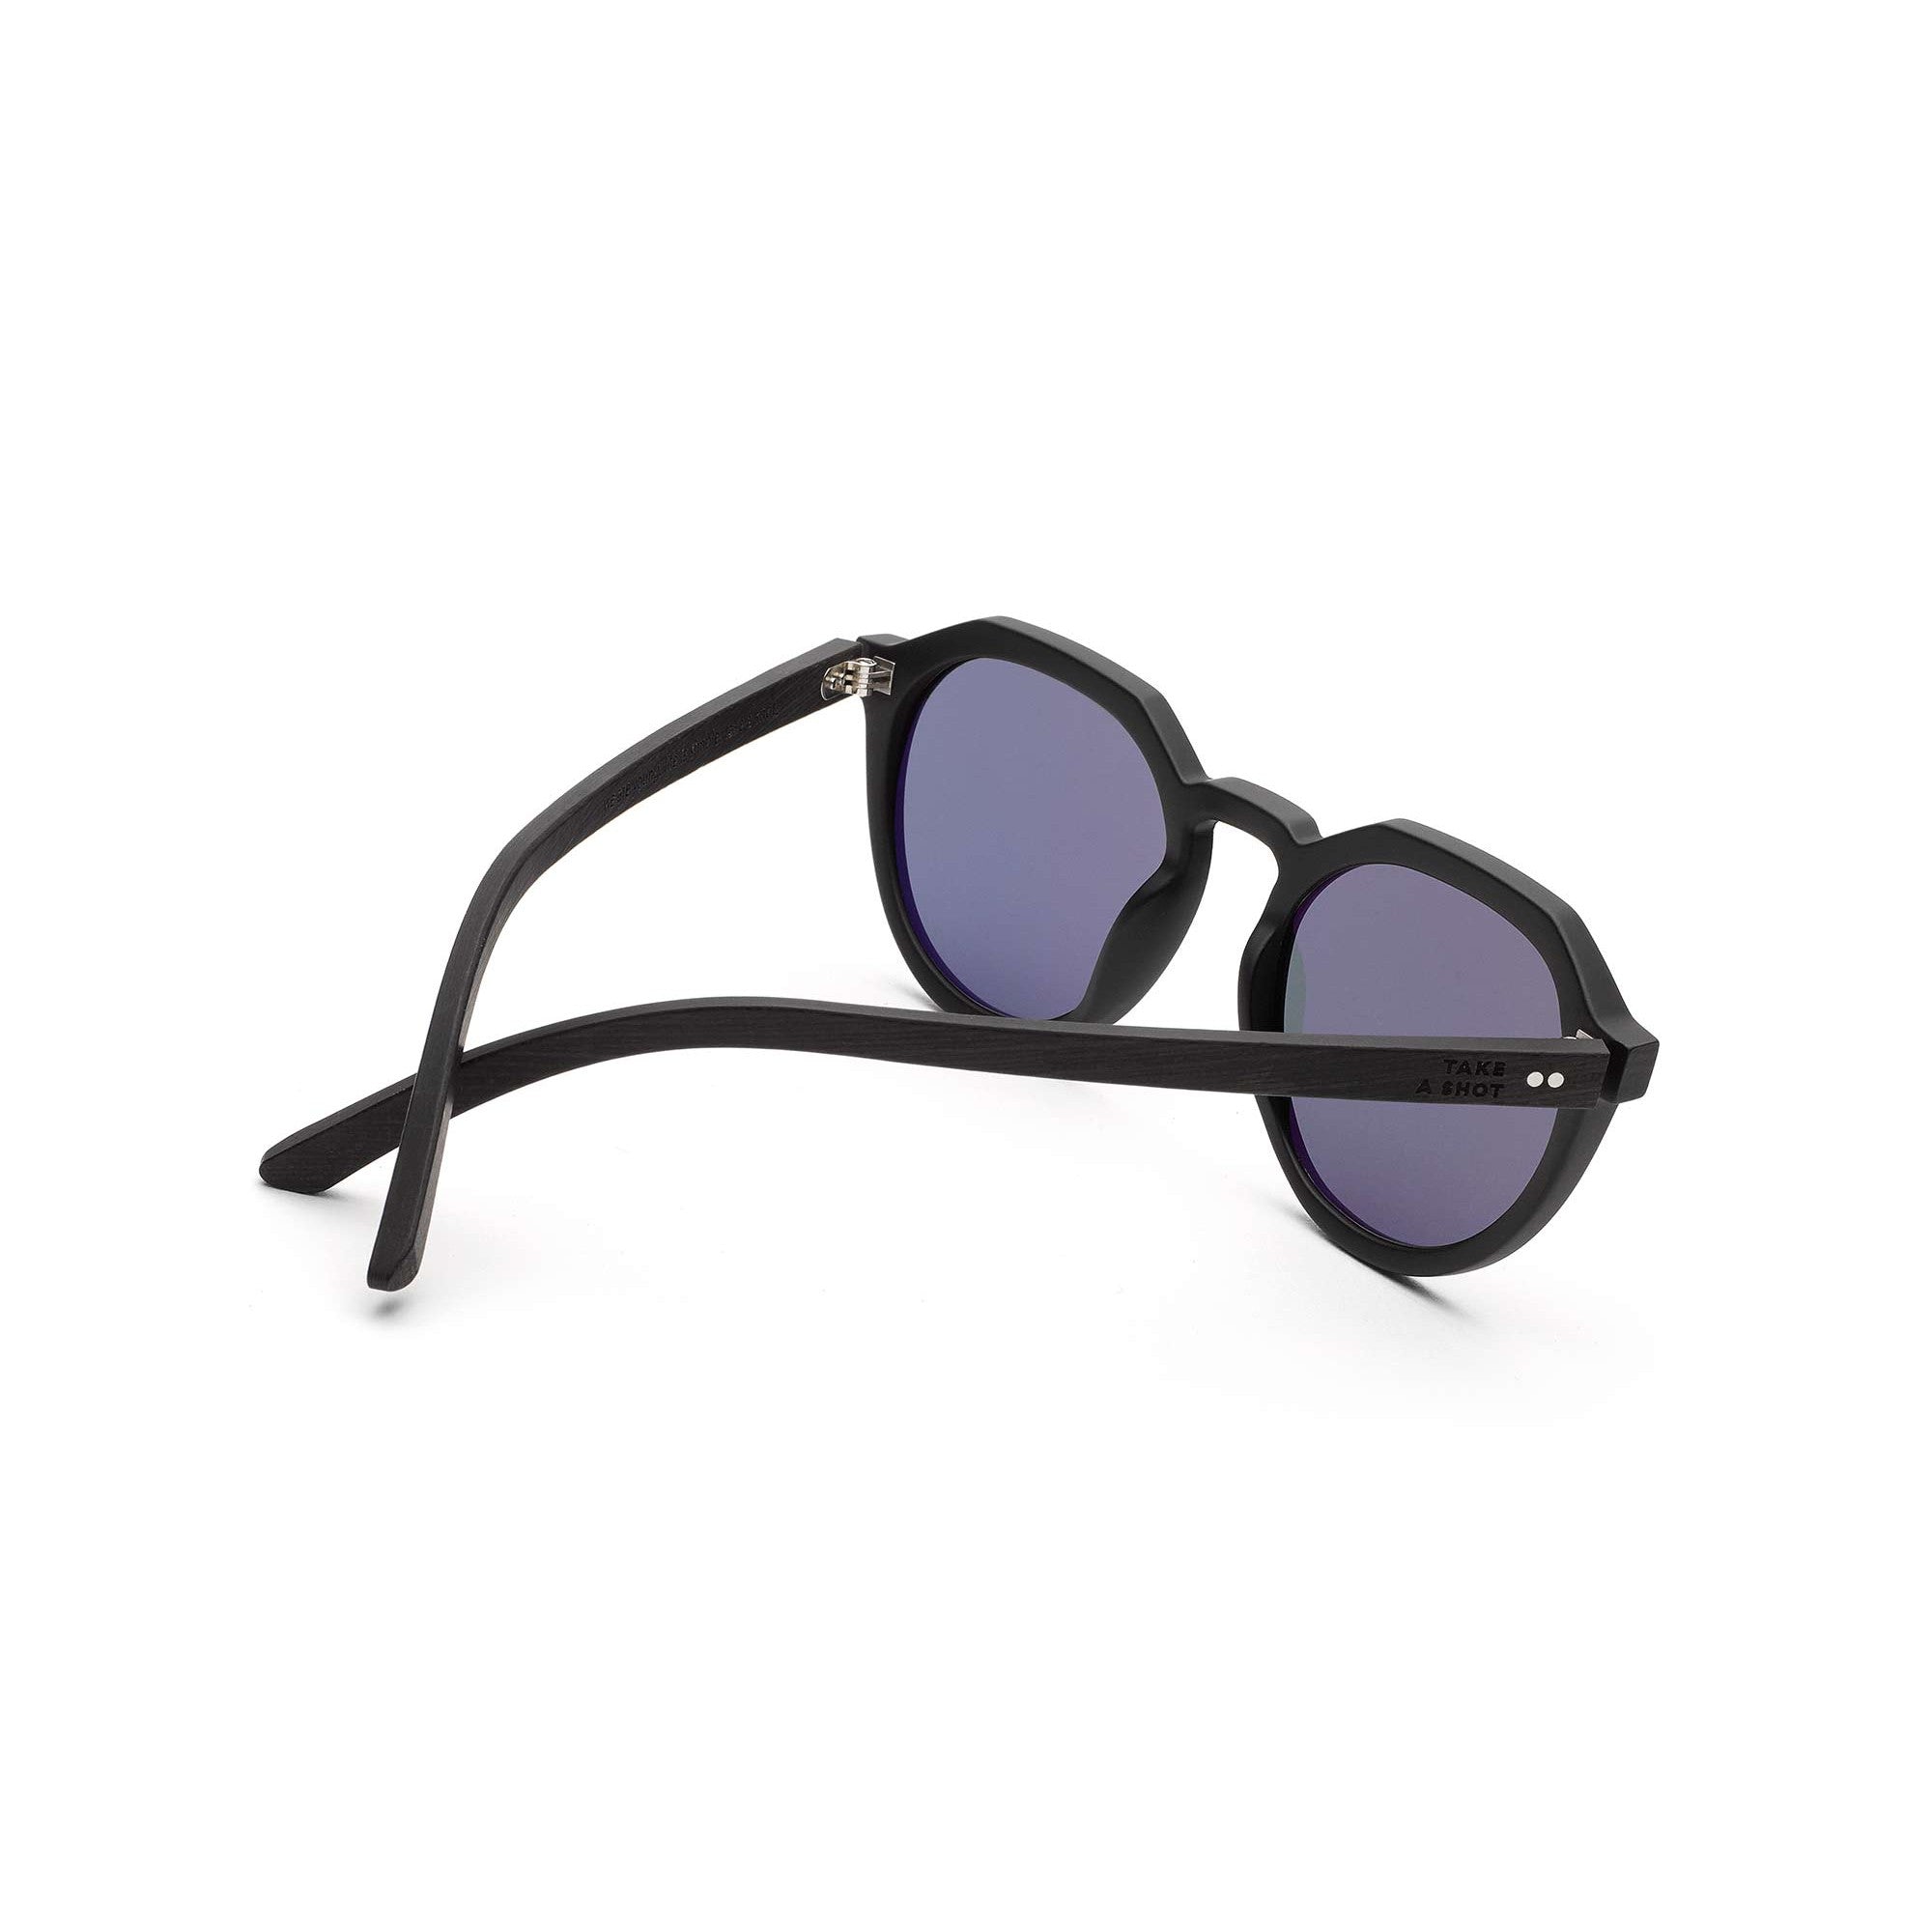 nachhaltige schwarze holz sonnenbrille schwarz flat top graues glas wilson take a shot aus leipzig